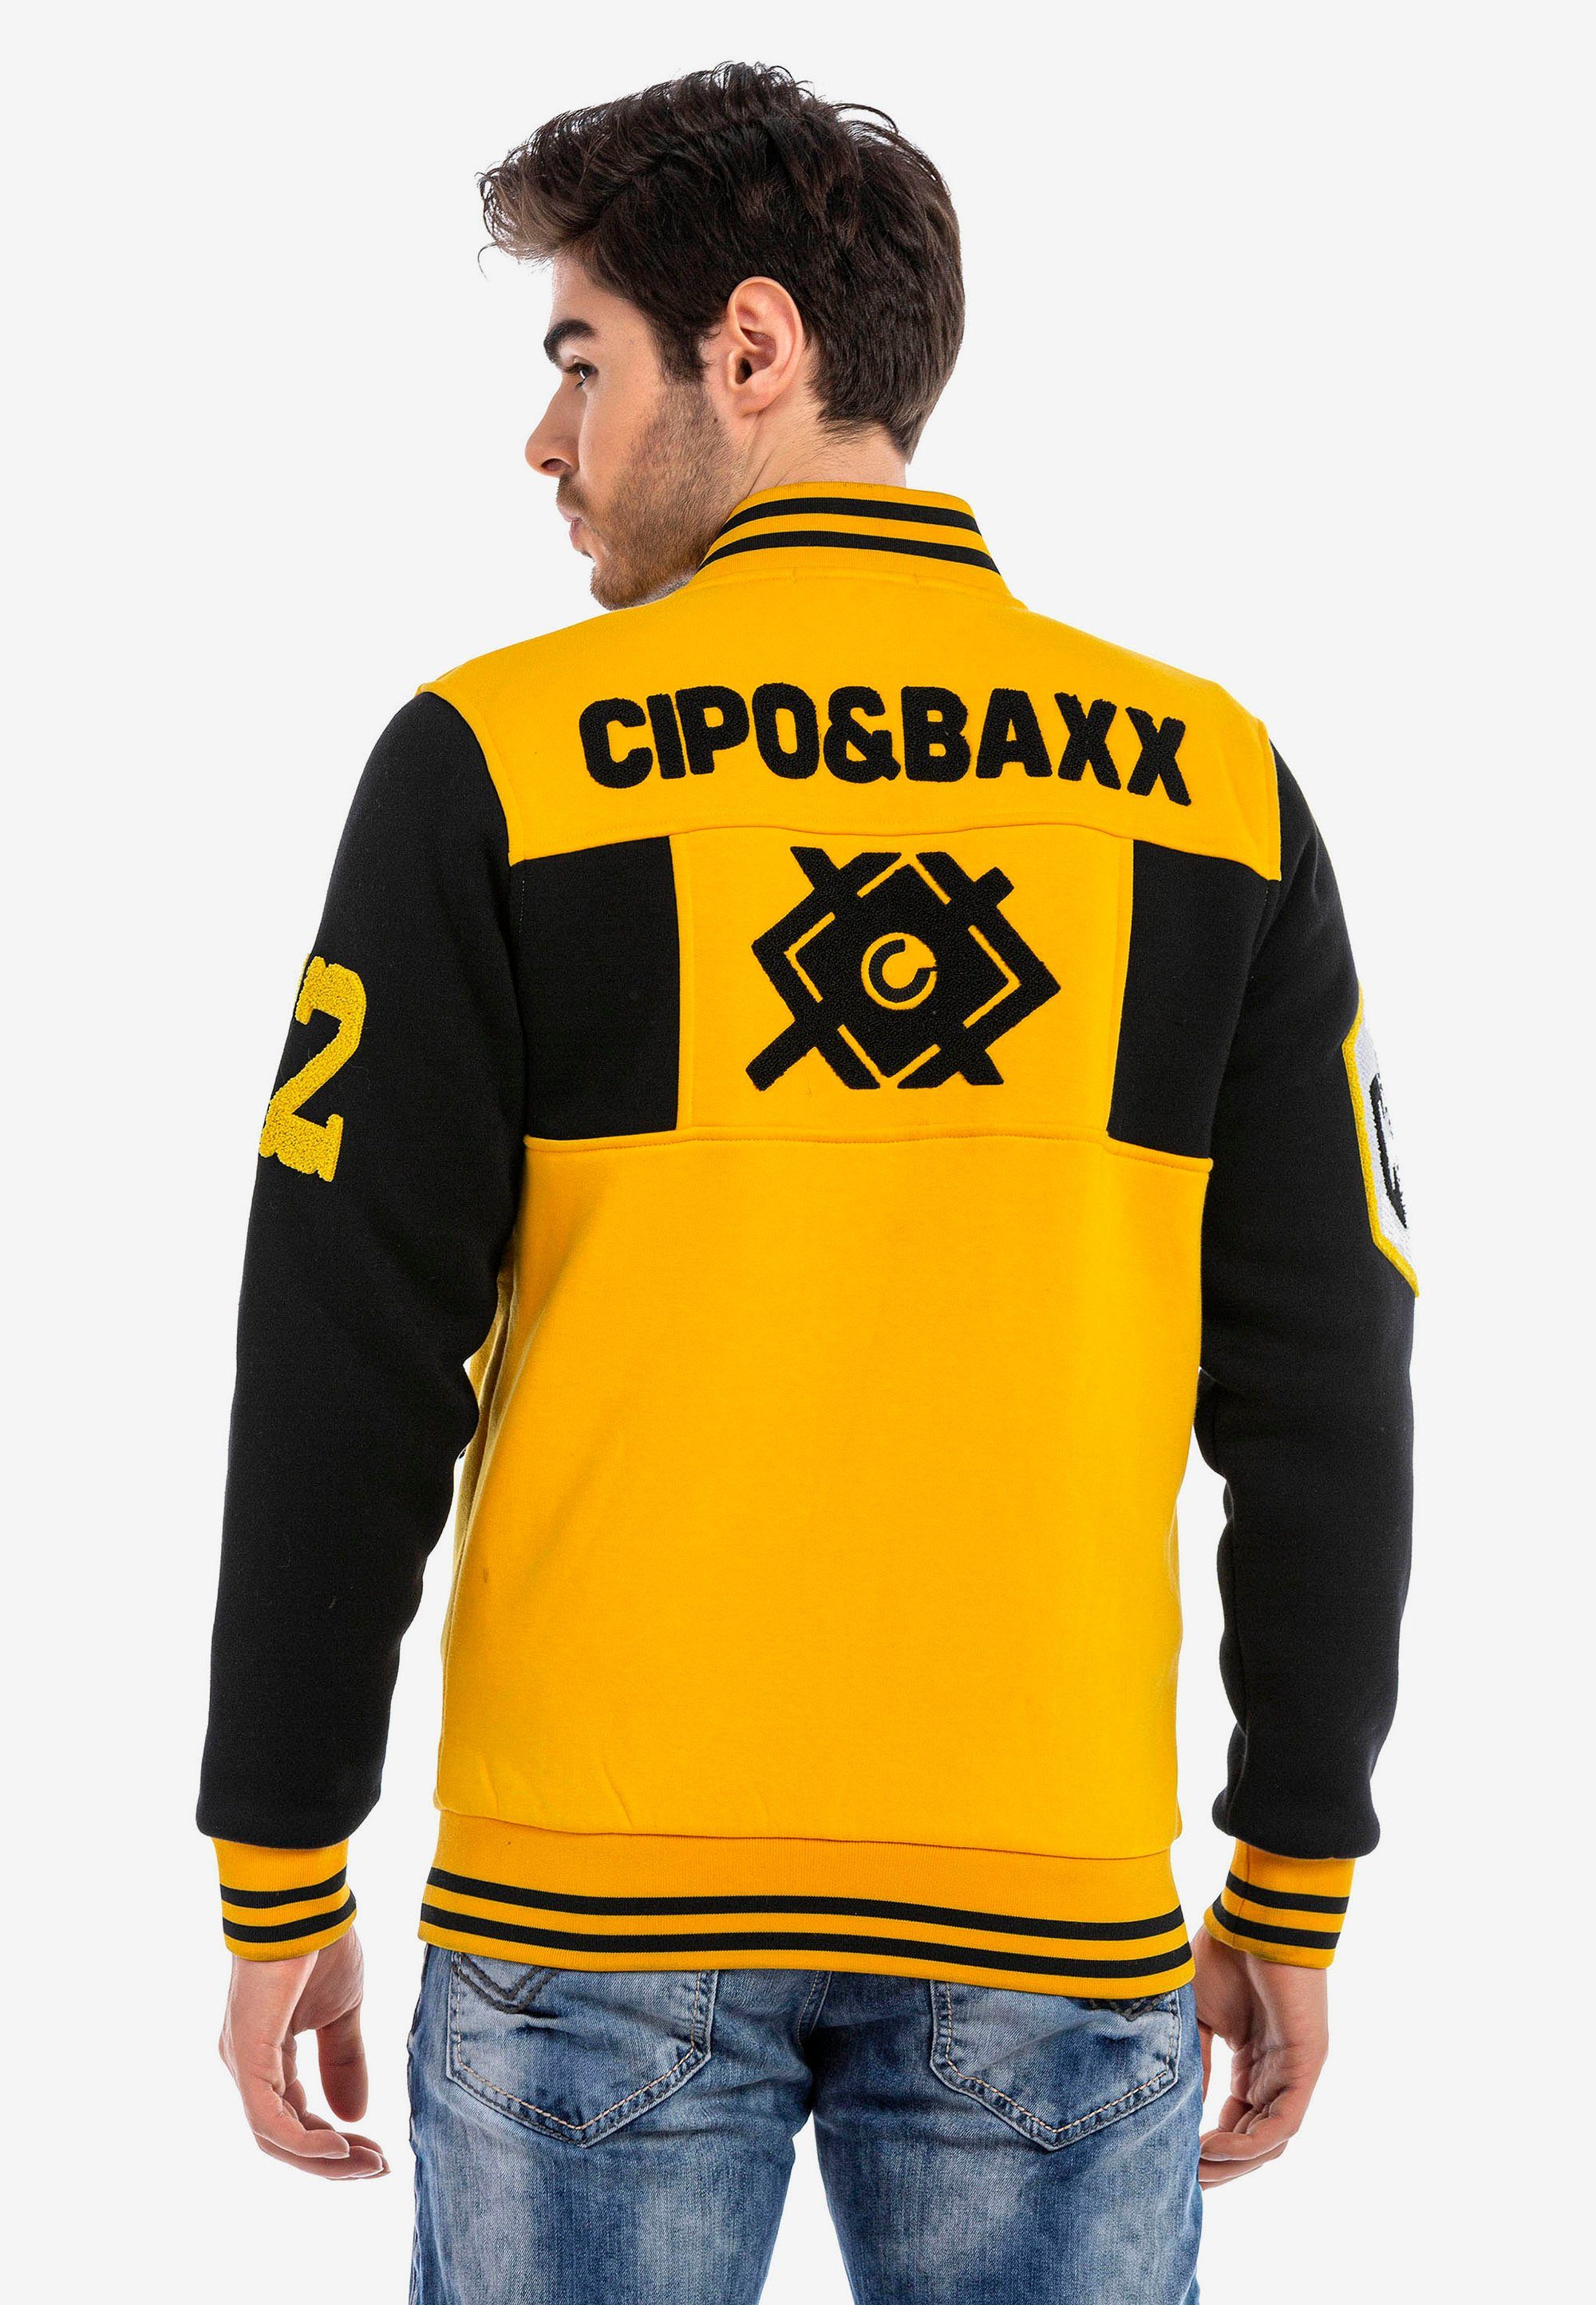 Cipo & Baxx Sweatjacke in sportlichem gelb-schwarz Design